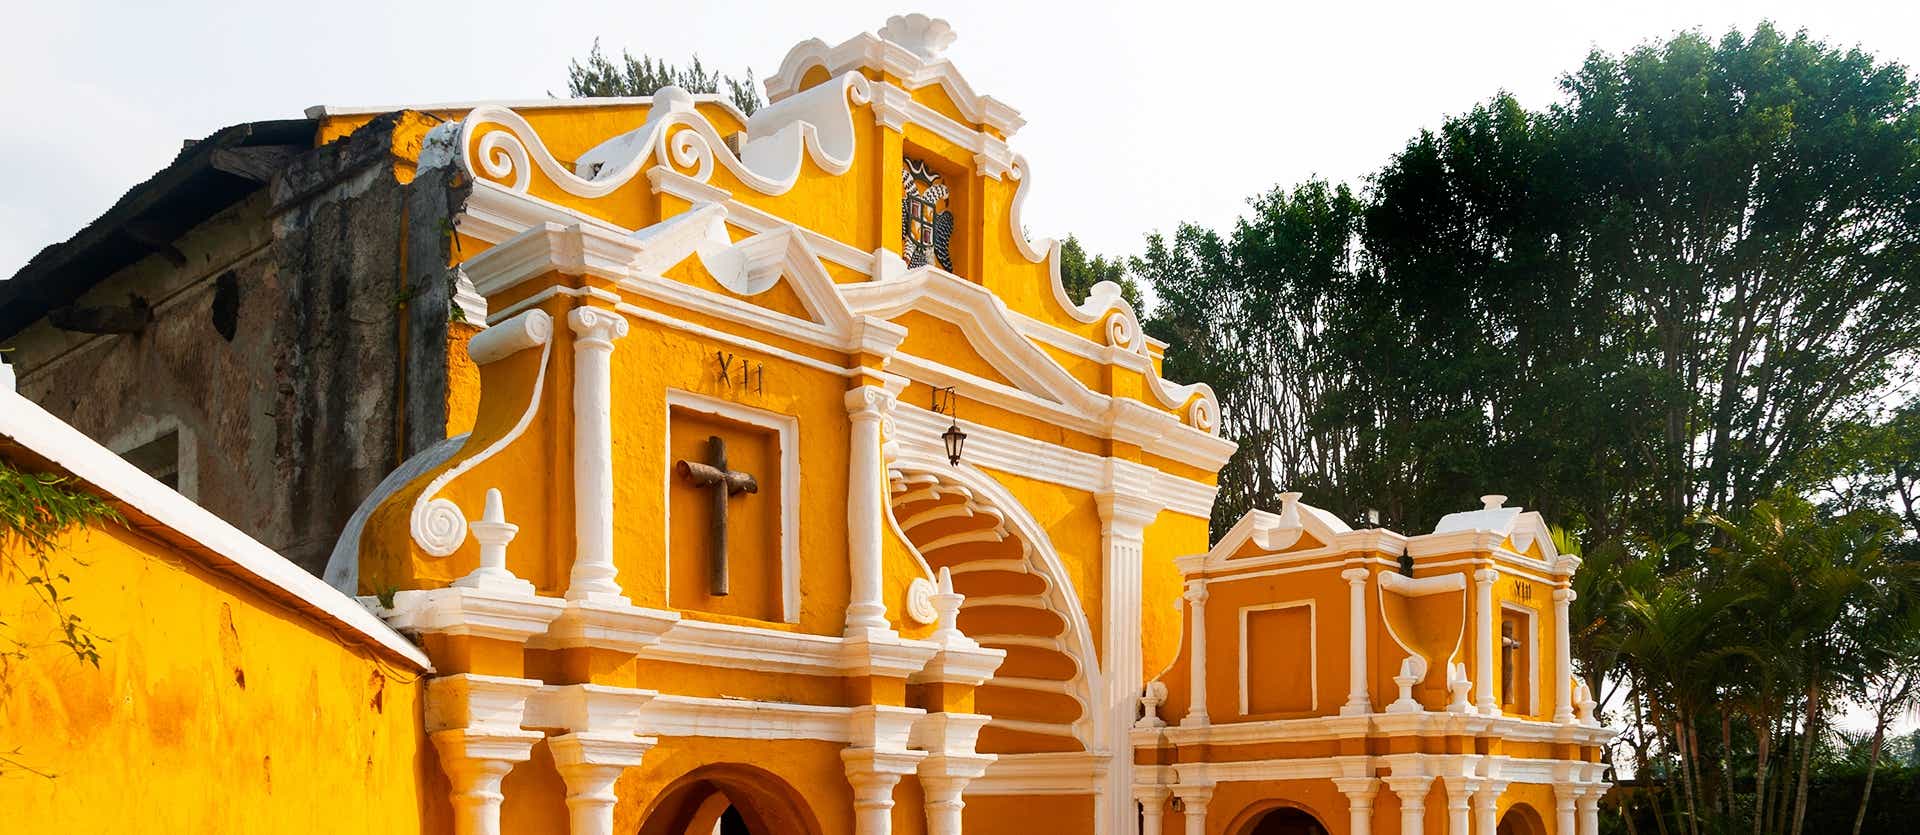 Ermita de El Calvario <span class="iconos separador"></span> Antigua Guatemala <span class="iconos separador"></span> Guatemala